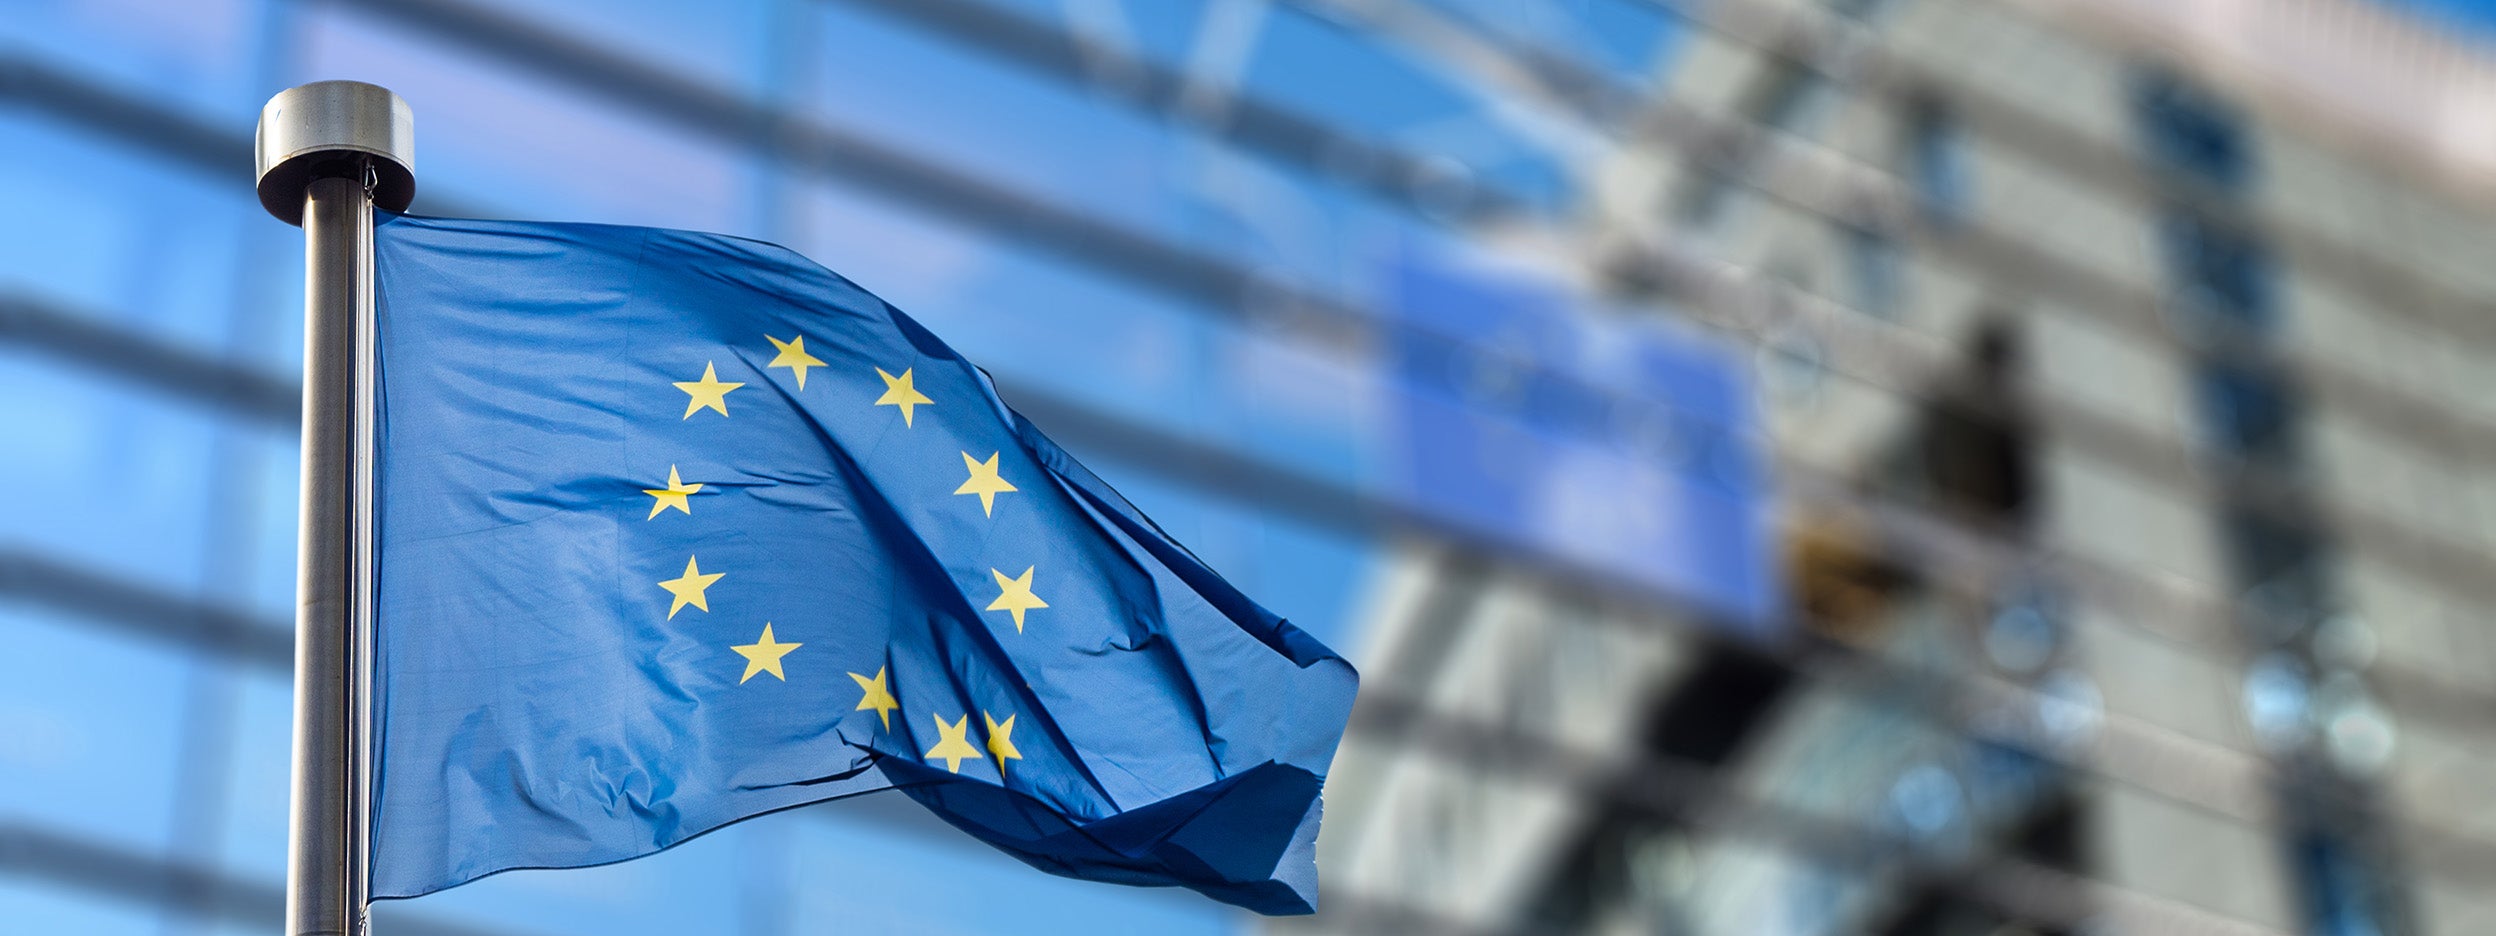 Международная политика европы. Флаг совета Европы. ЕС Европейский Союз. Европейский Союз (Евросоюз). Флаг Евросоюза.